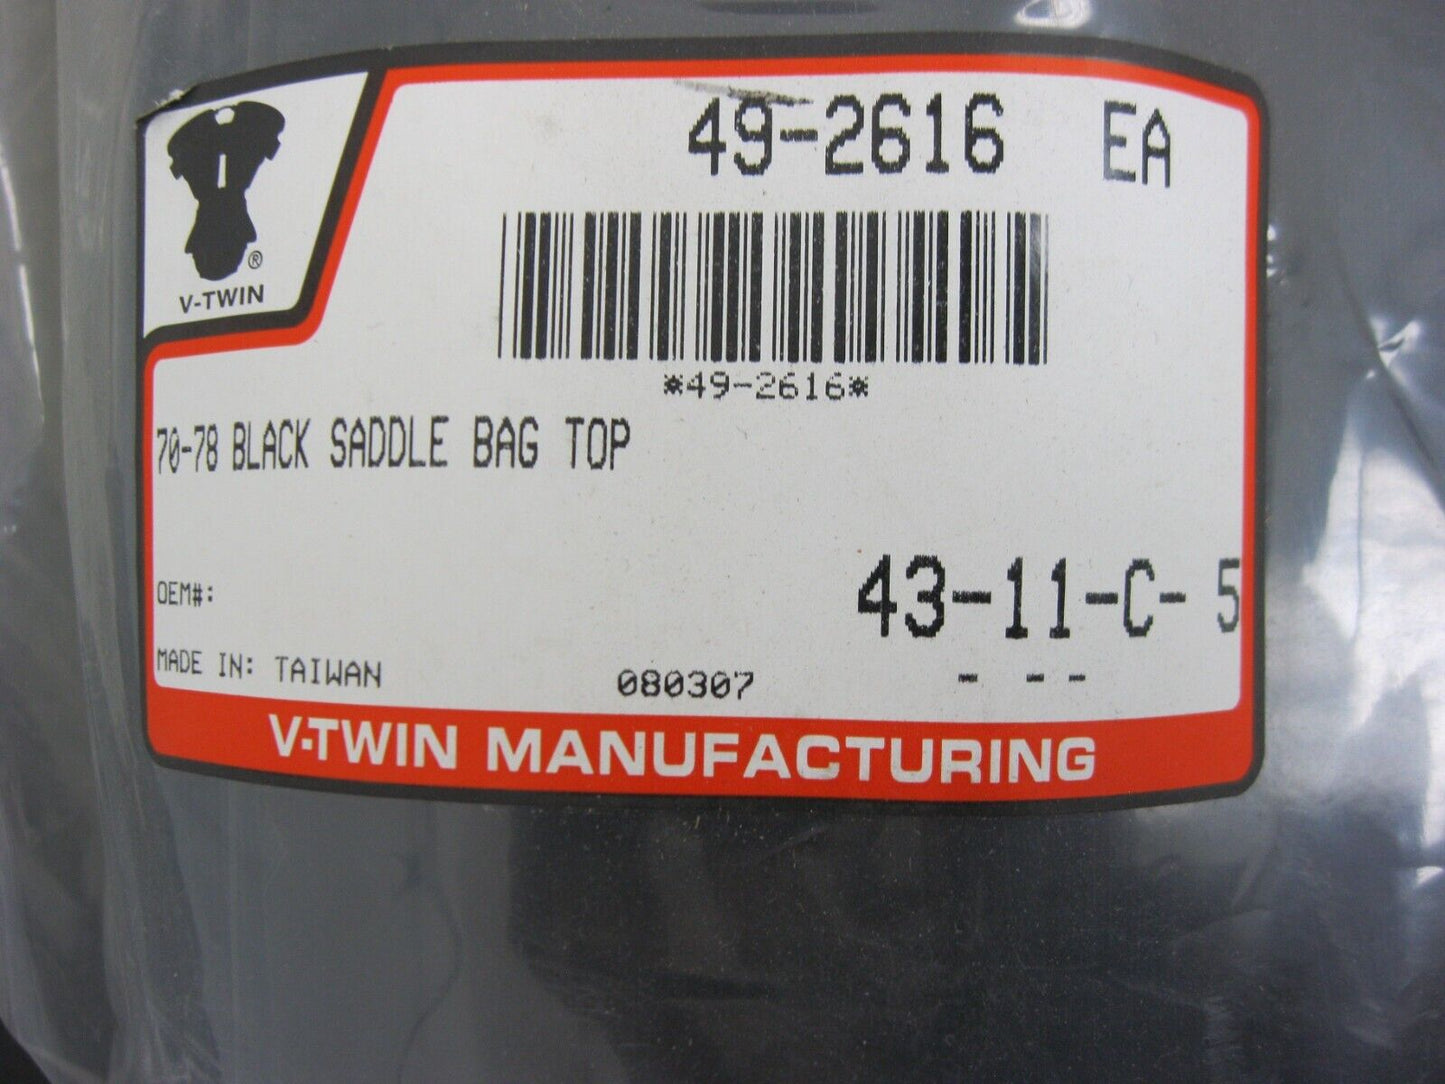 V-Twin Manufacturing 70-78 Black Saddlebag Top 49-2616